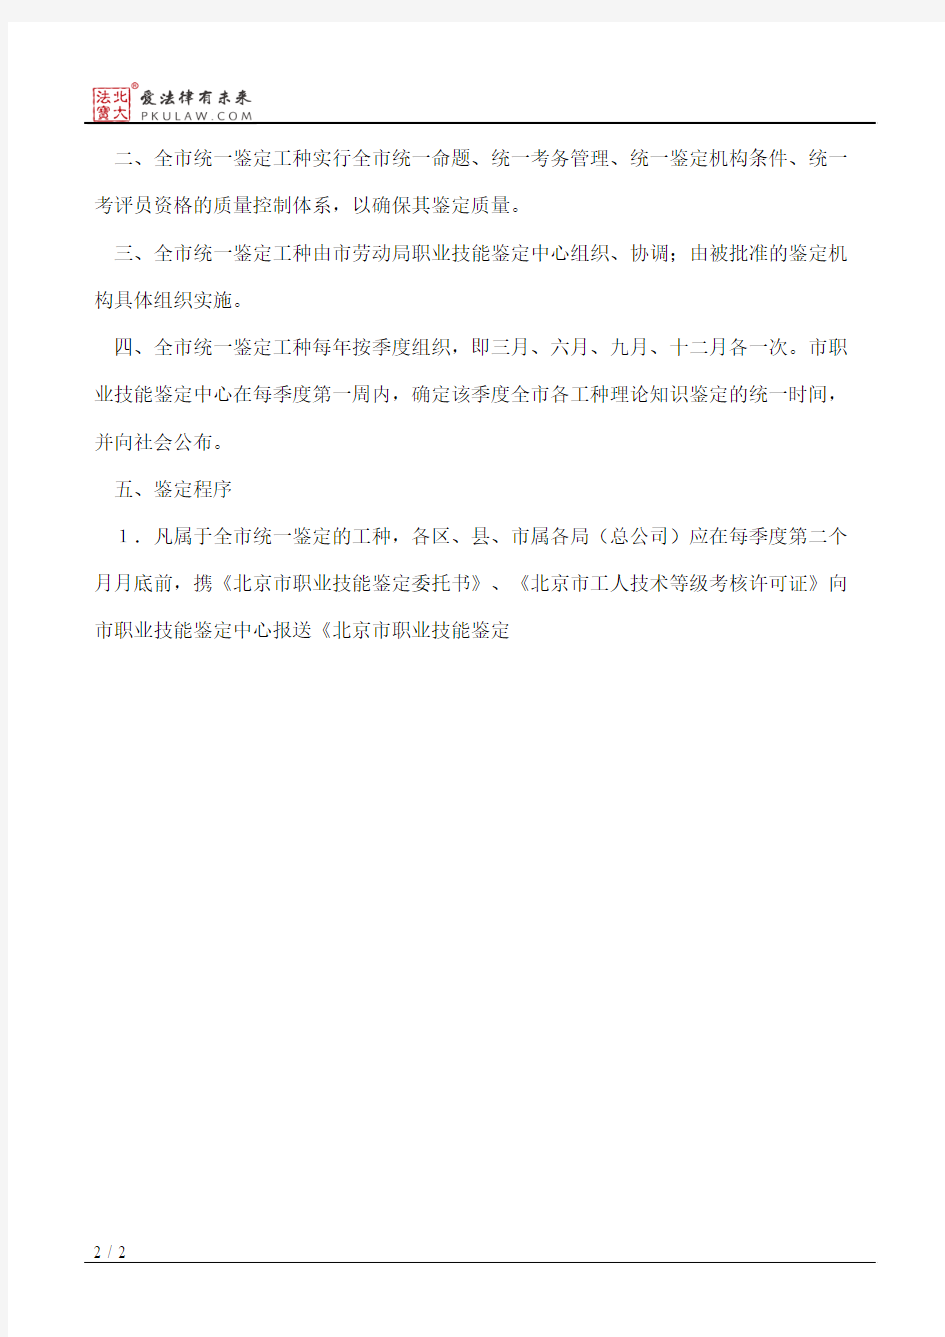 北京市劳动局关于全市统一鉴定的工种实施职业技能鉴定有关问题的通知